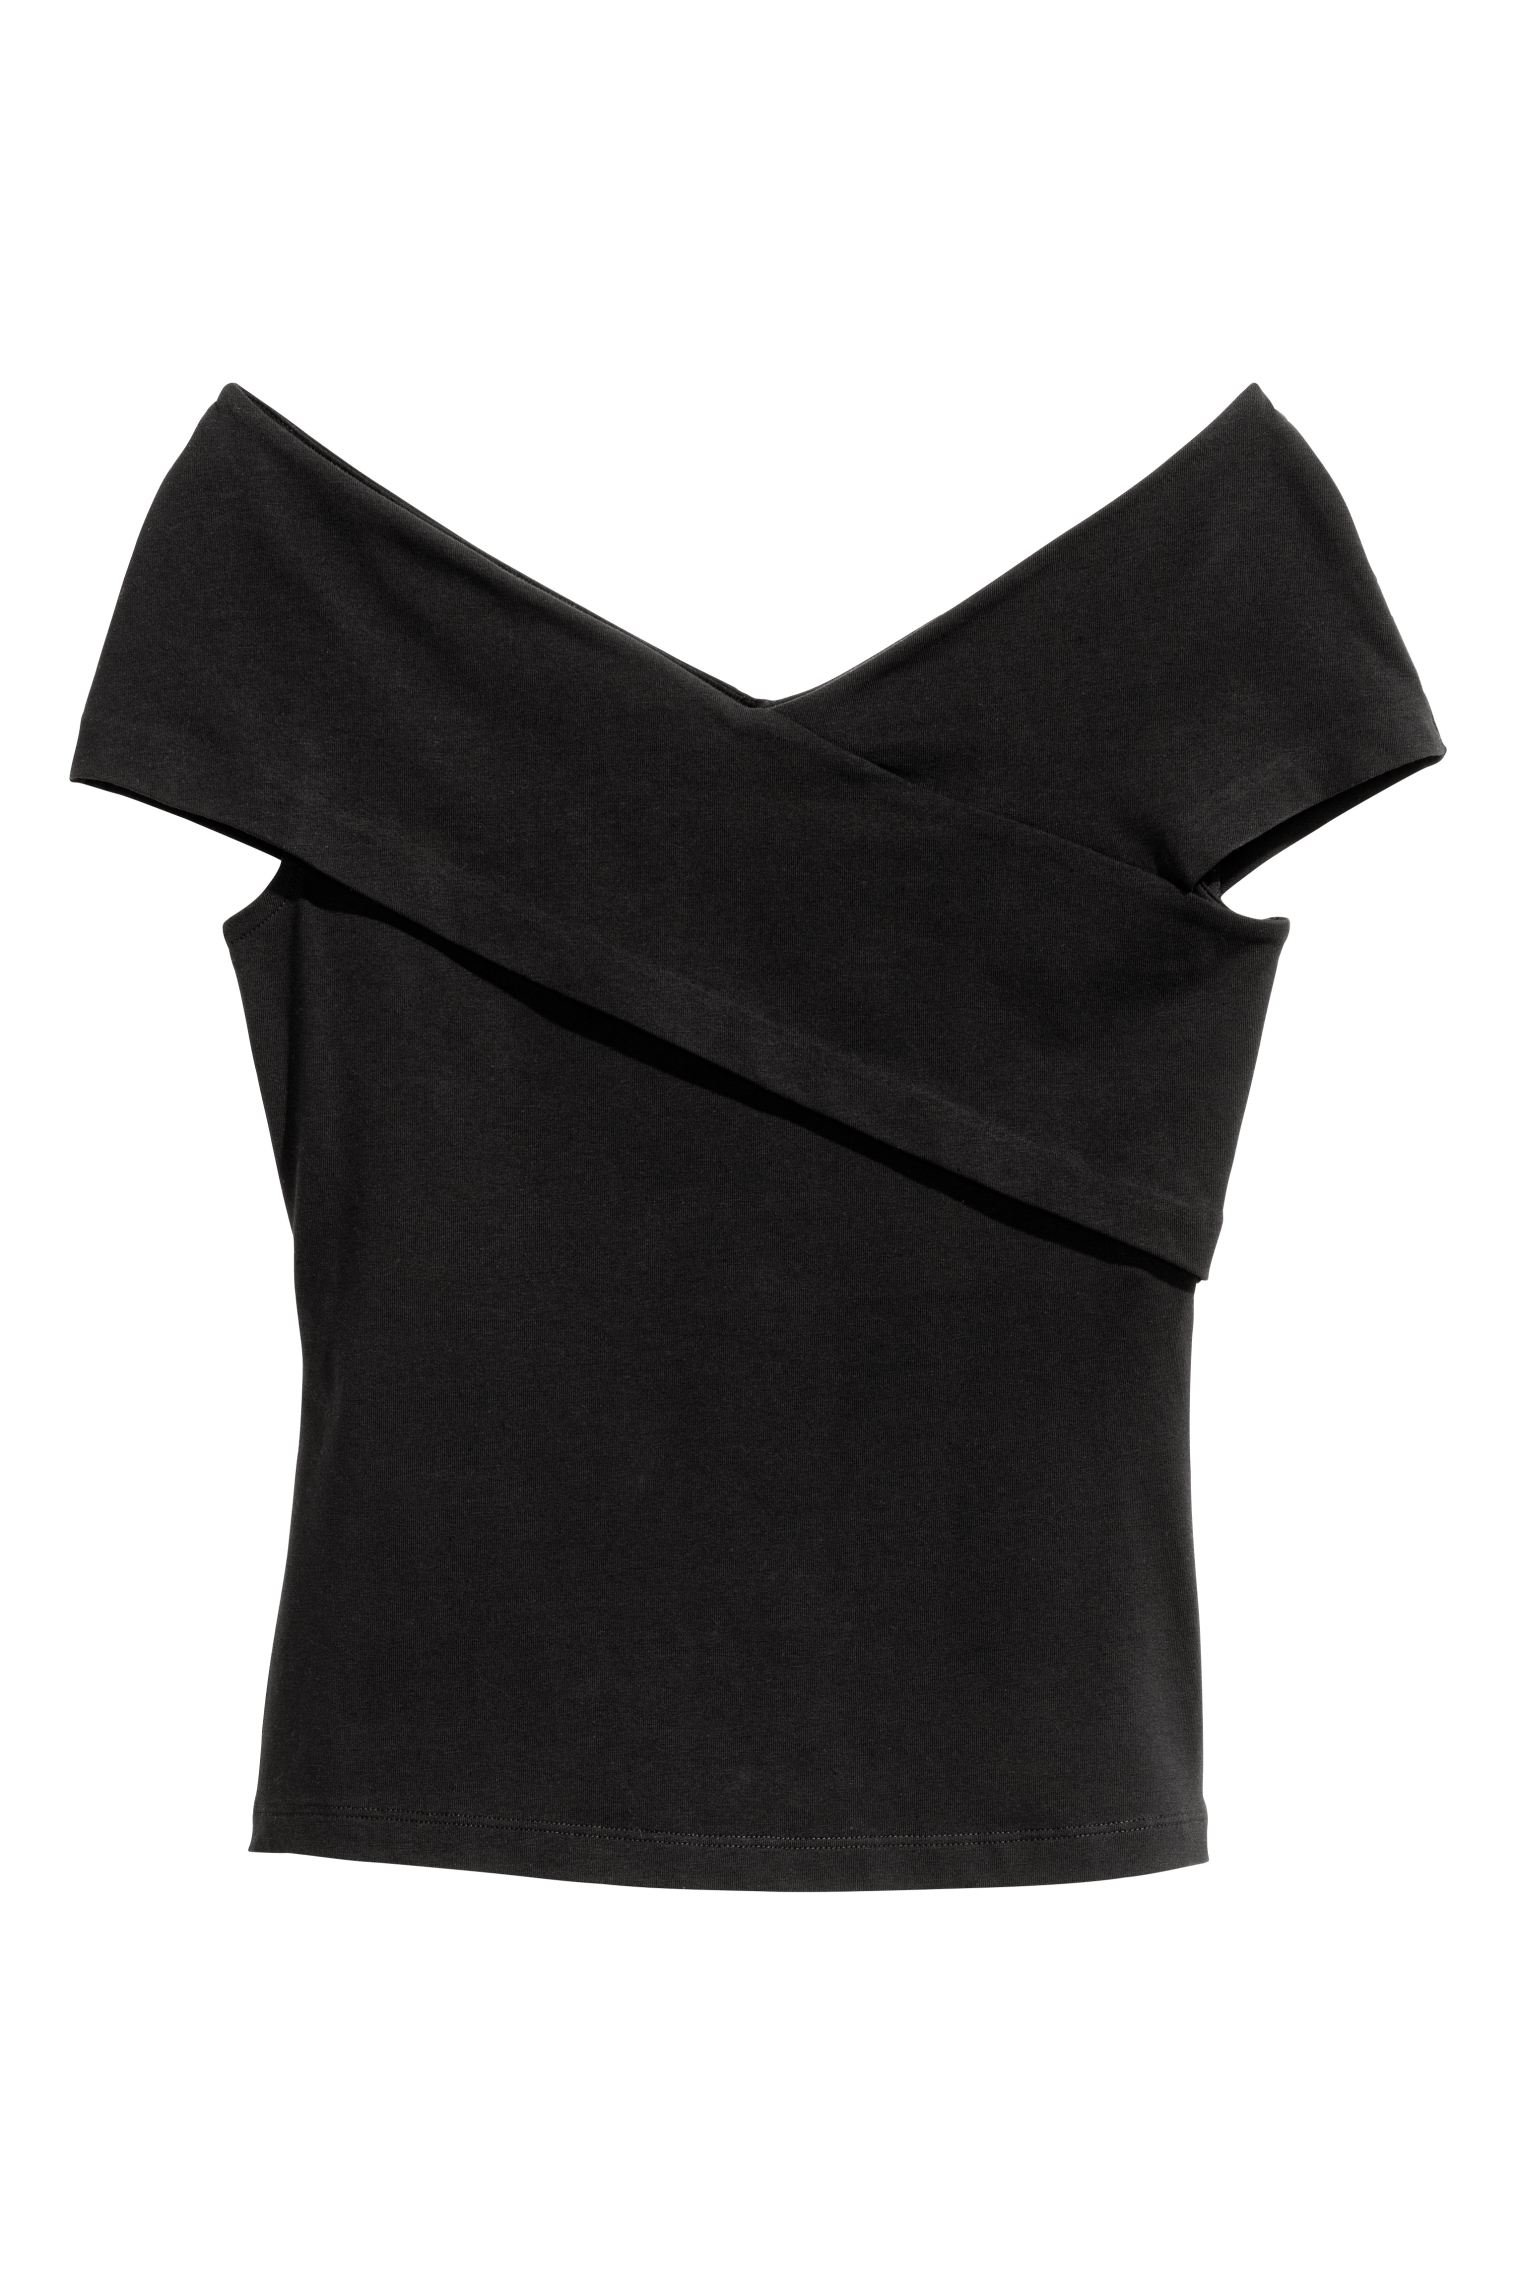 H&M Off-The-Shoulder Top in Black.jpg